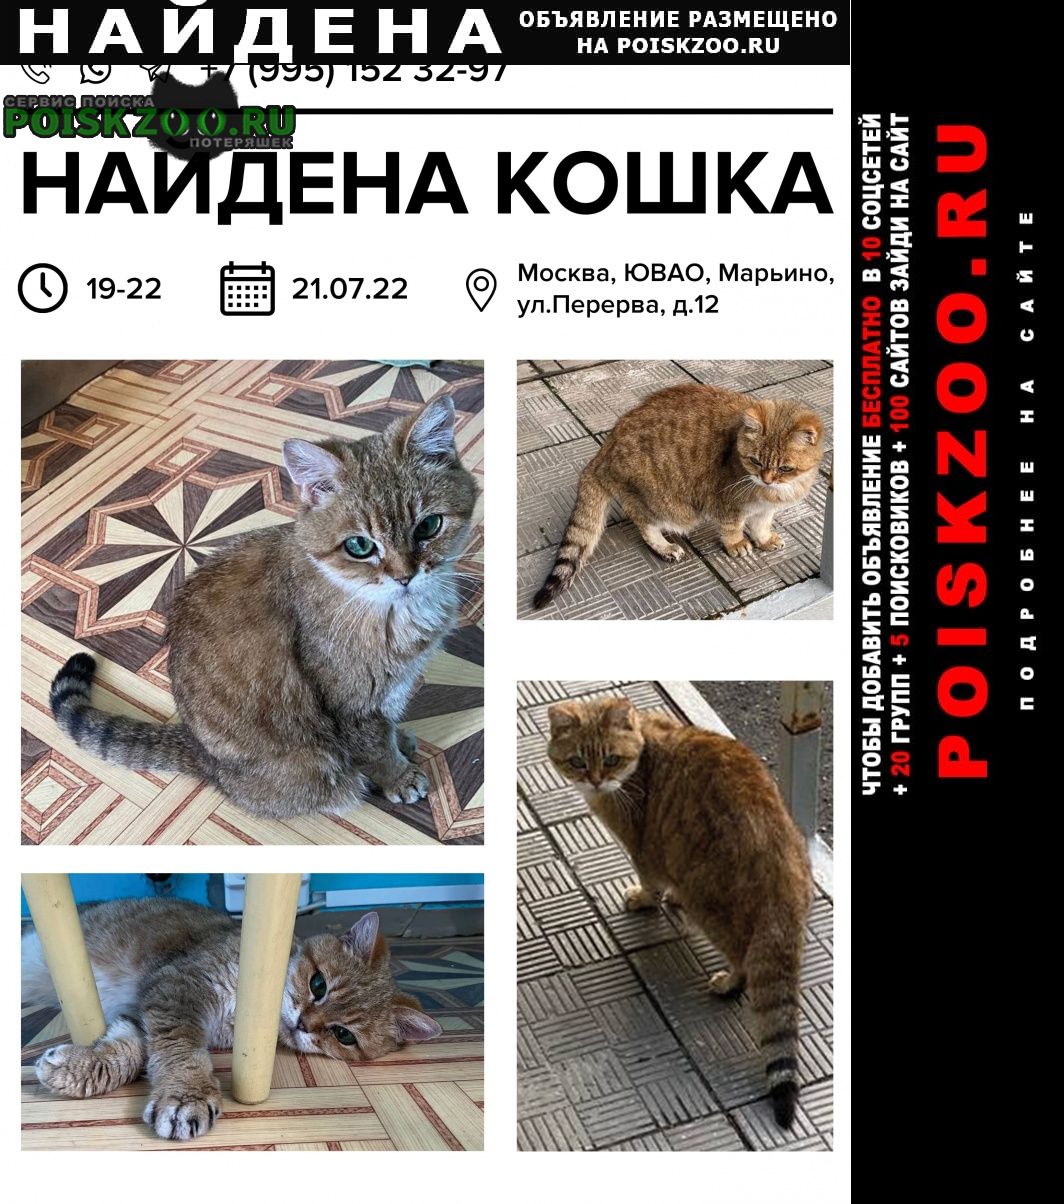 Найдена кошка. в 22:00 Москва